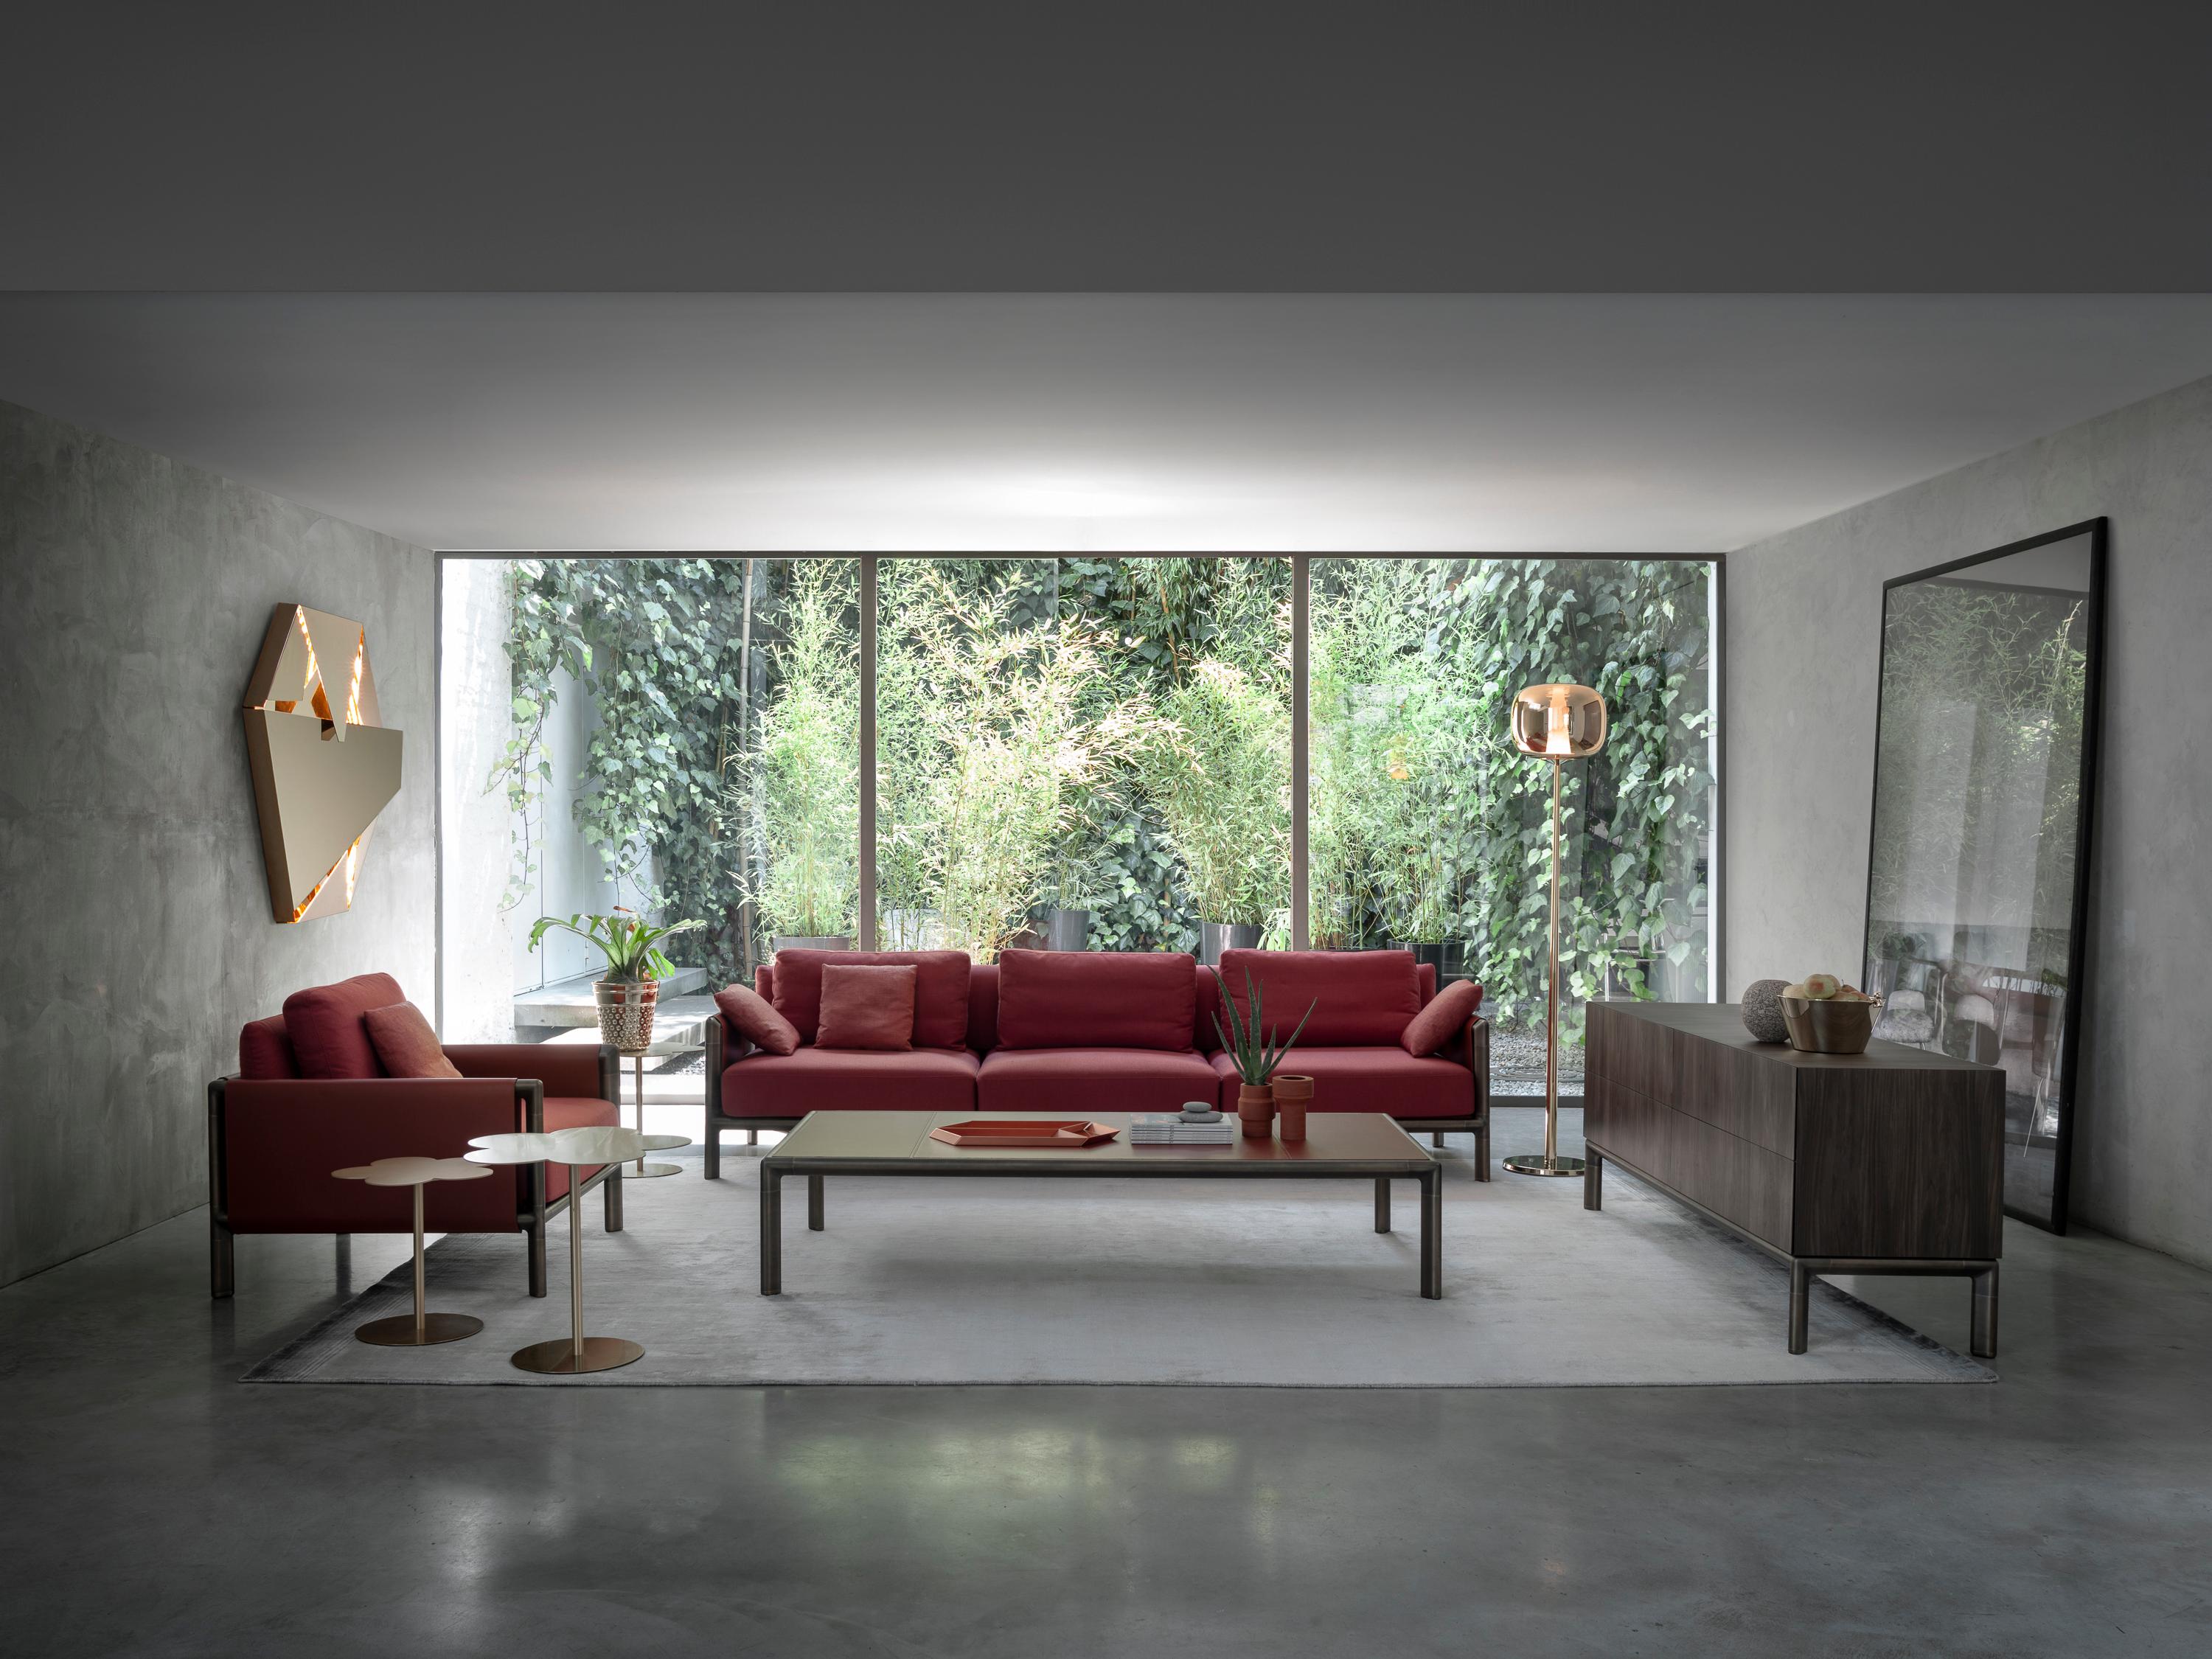 Stefano Giovannoni entwirft Frame für GHIDINI1961, eine neue Kollektion, die aus Sofas, Sesseln, Ess- und Couchtischen, Bücherregalen und Schränken besteht. Alles beginnt mit einem einfachen Element: 